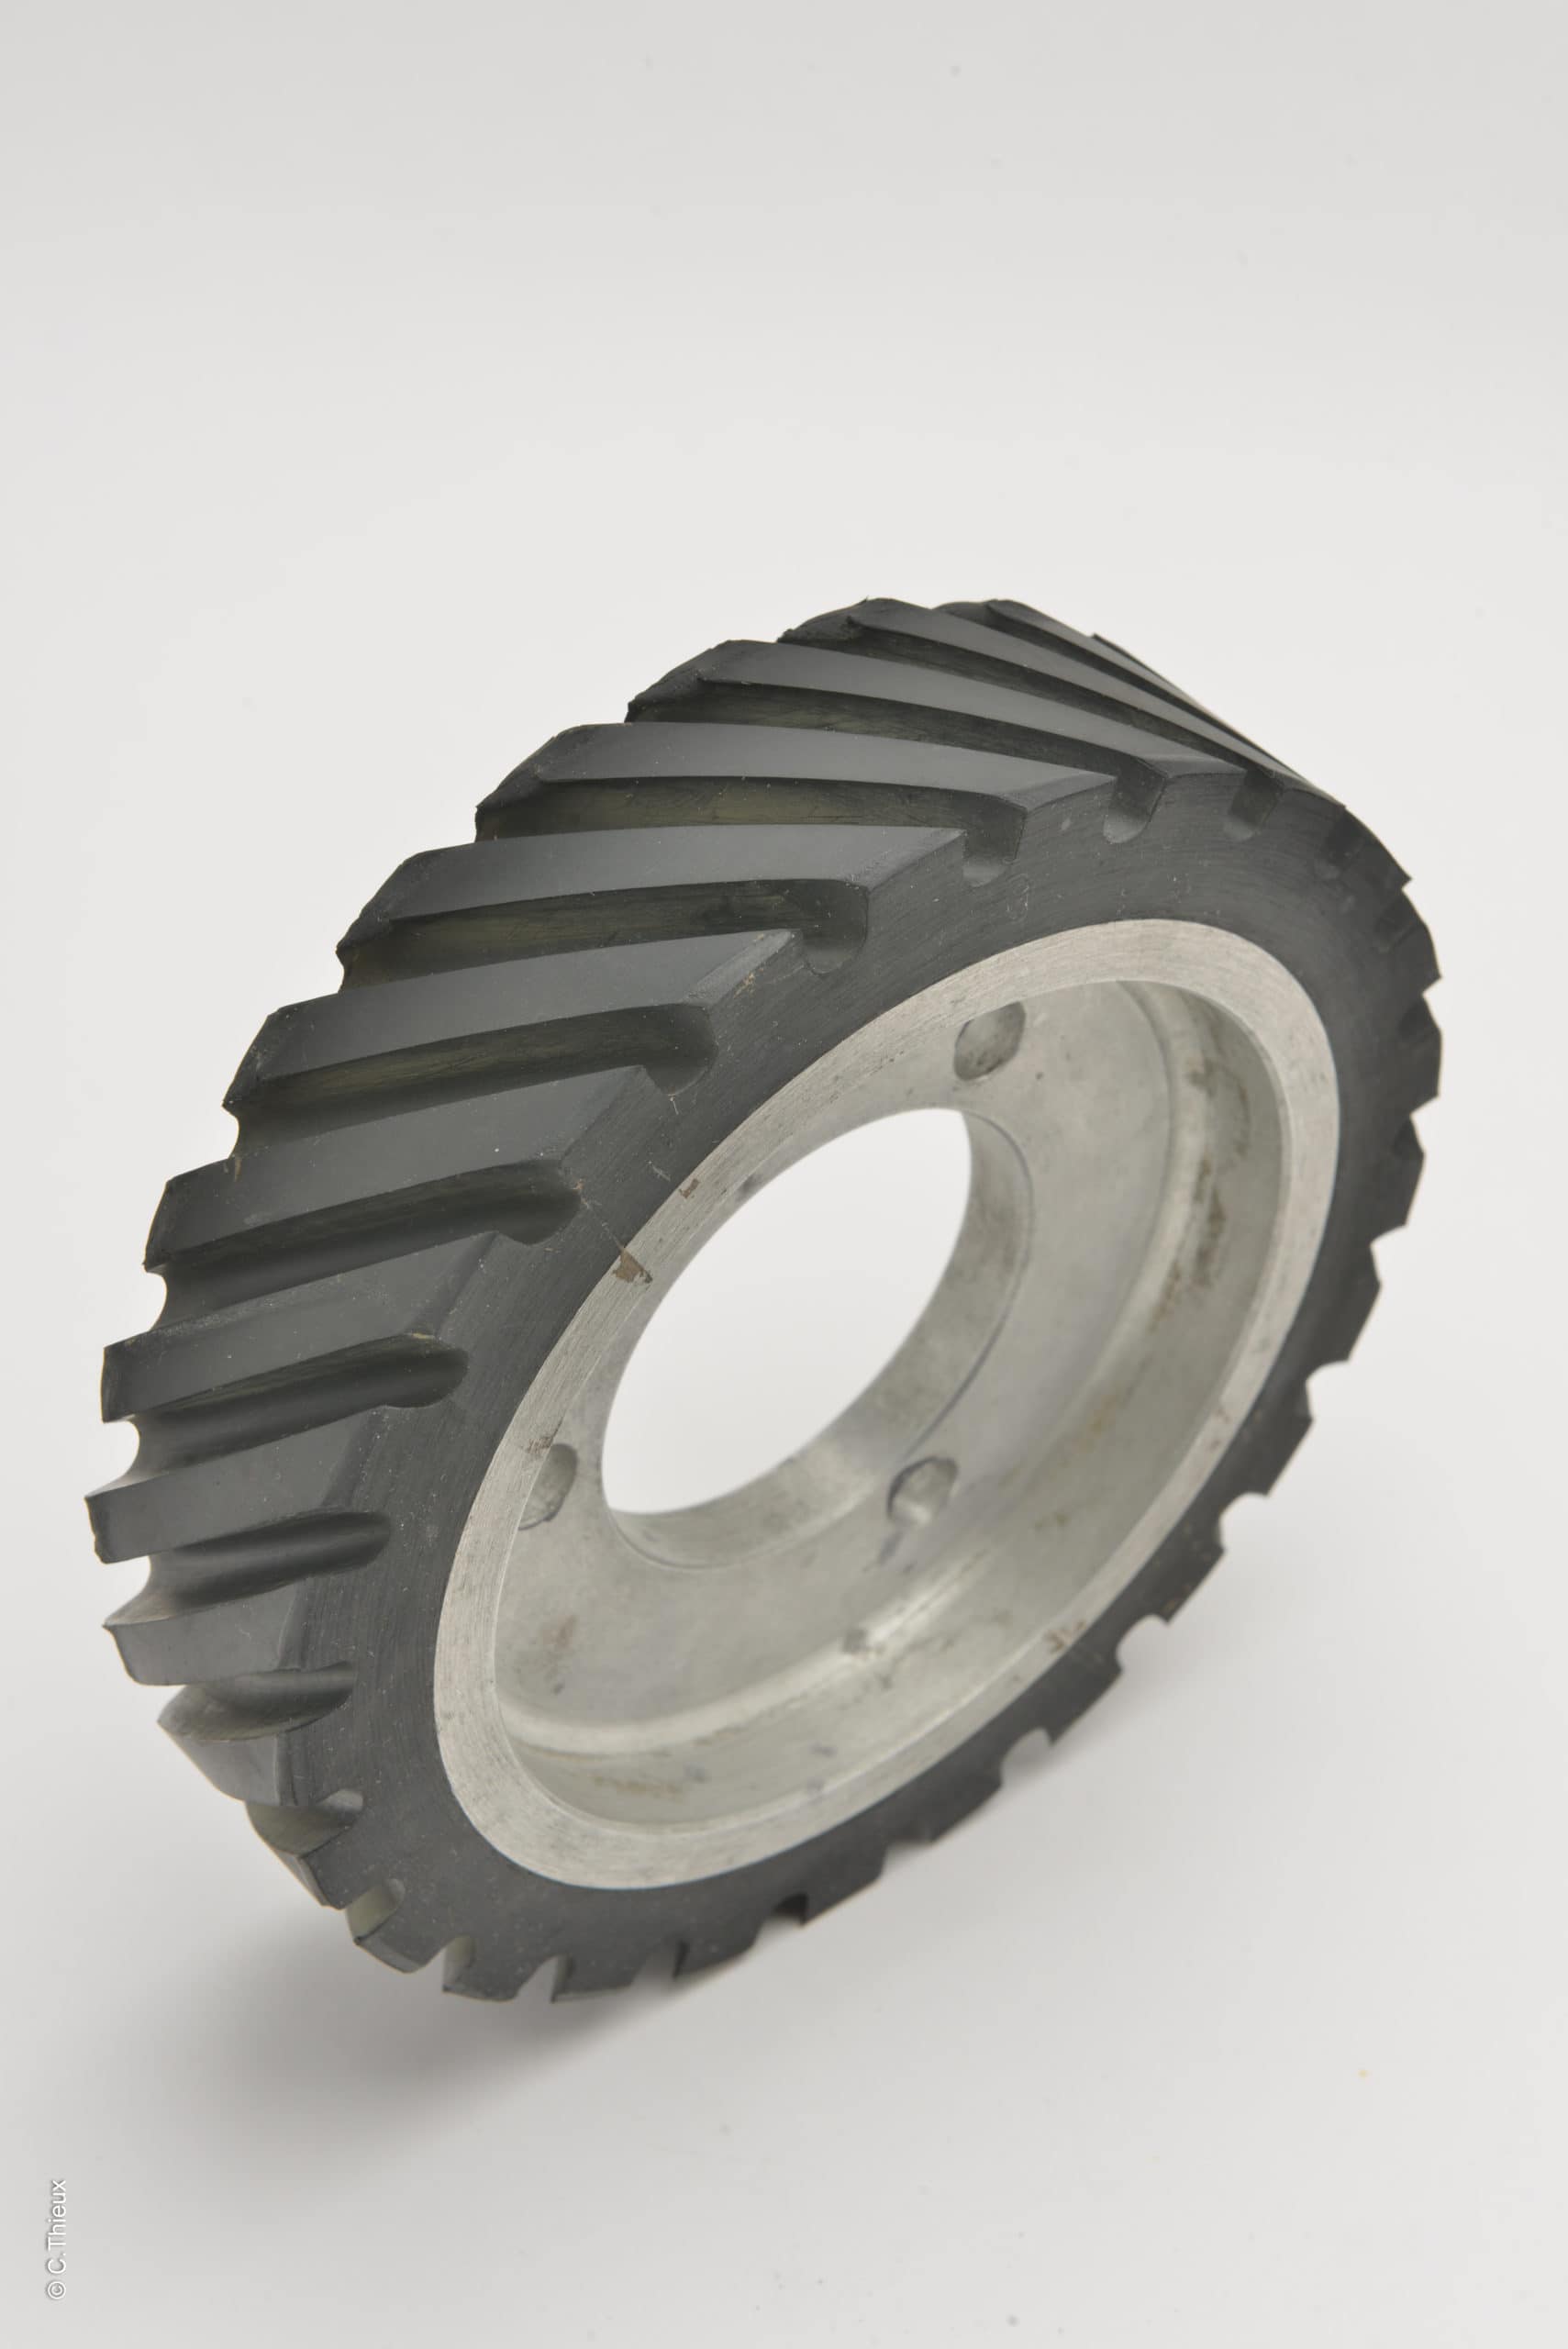 MERARD rubber contact wheel